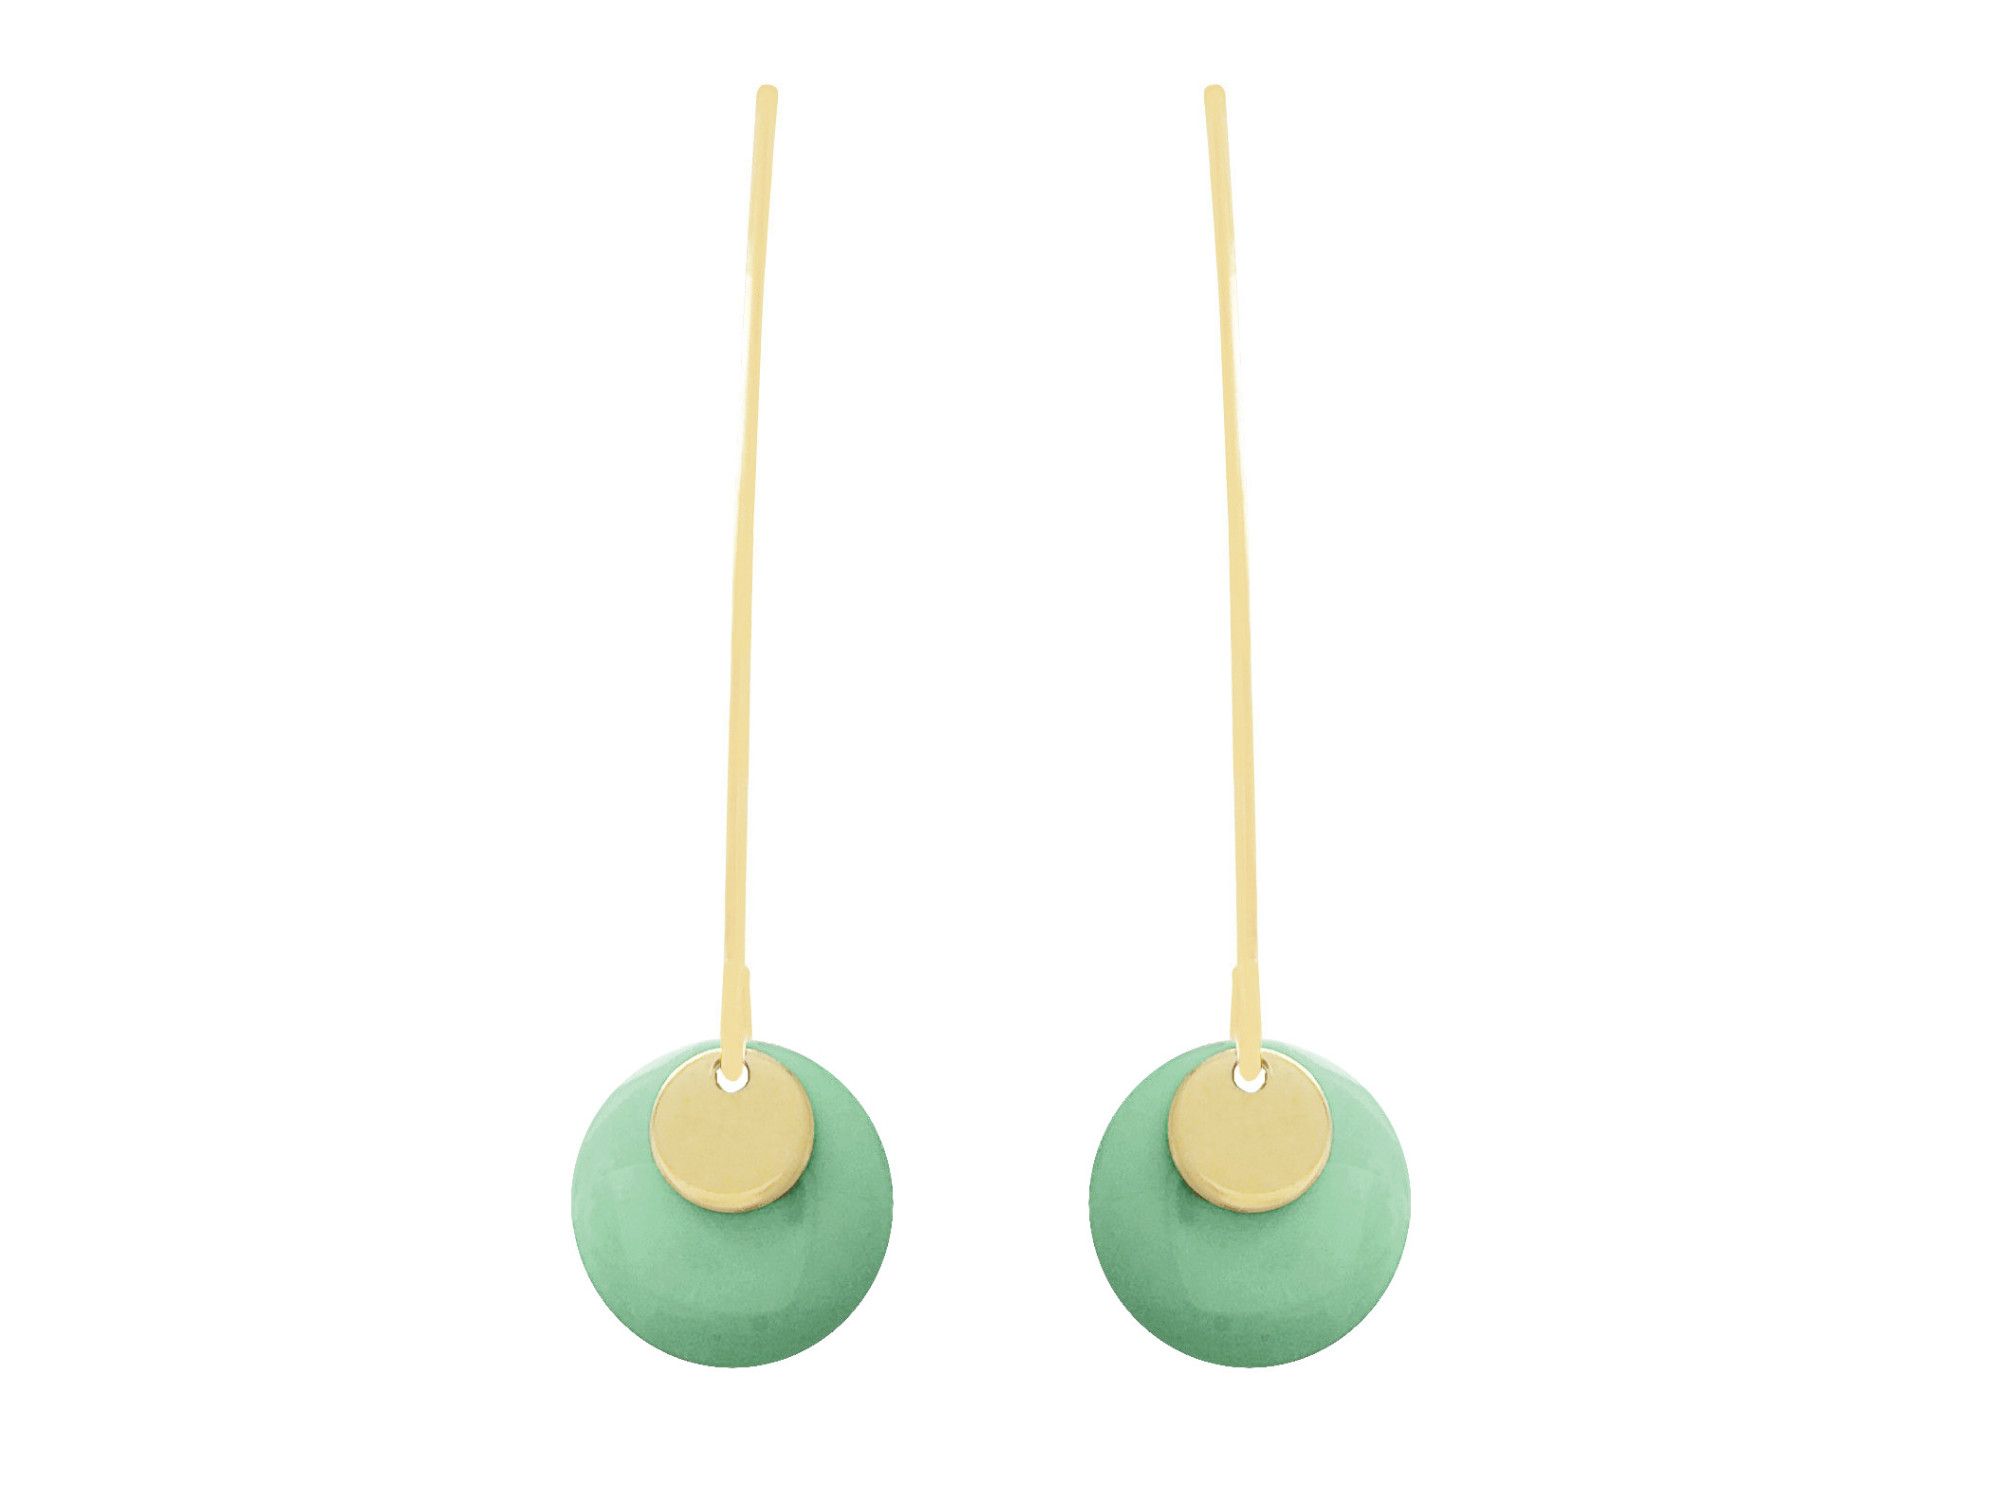 Boucles doreilles NIGAR6 pendantes acier inoxydable doré or sequin émaillé rond vert minimaliste